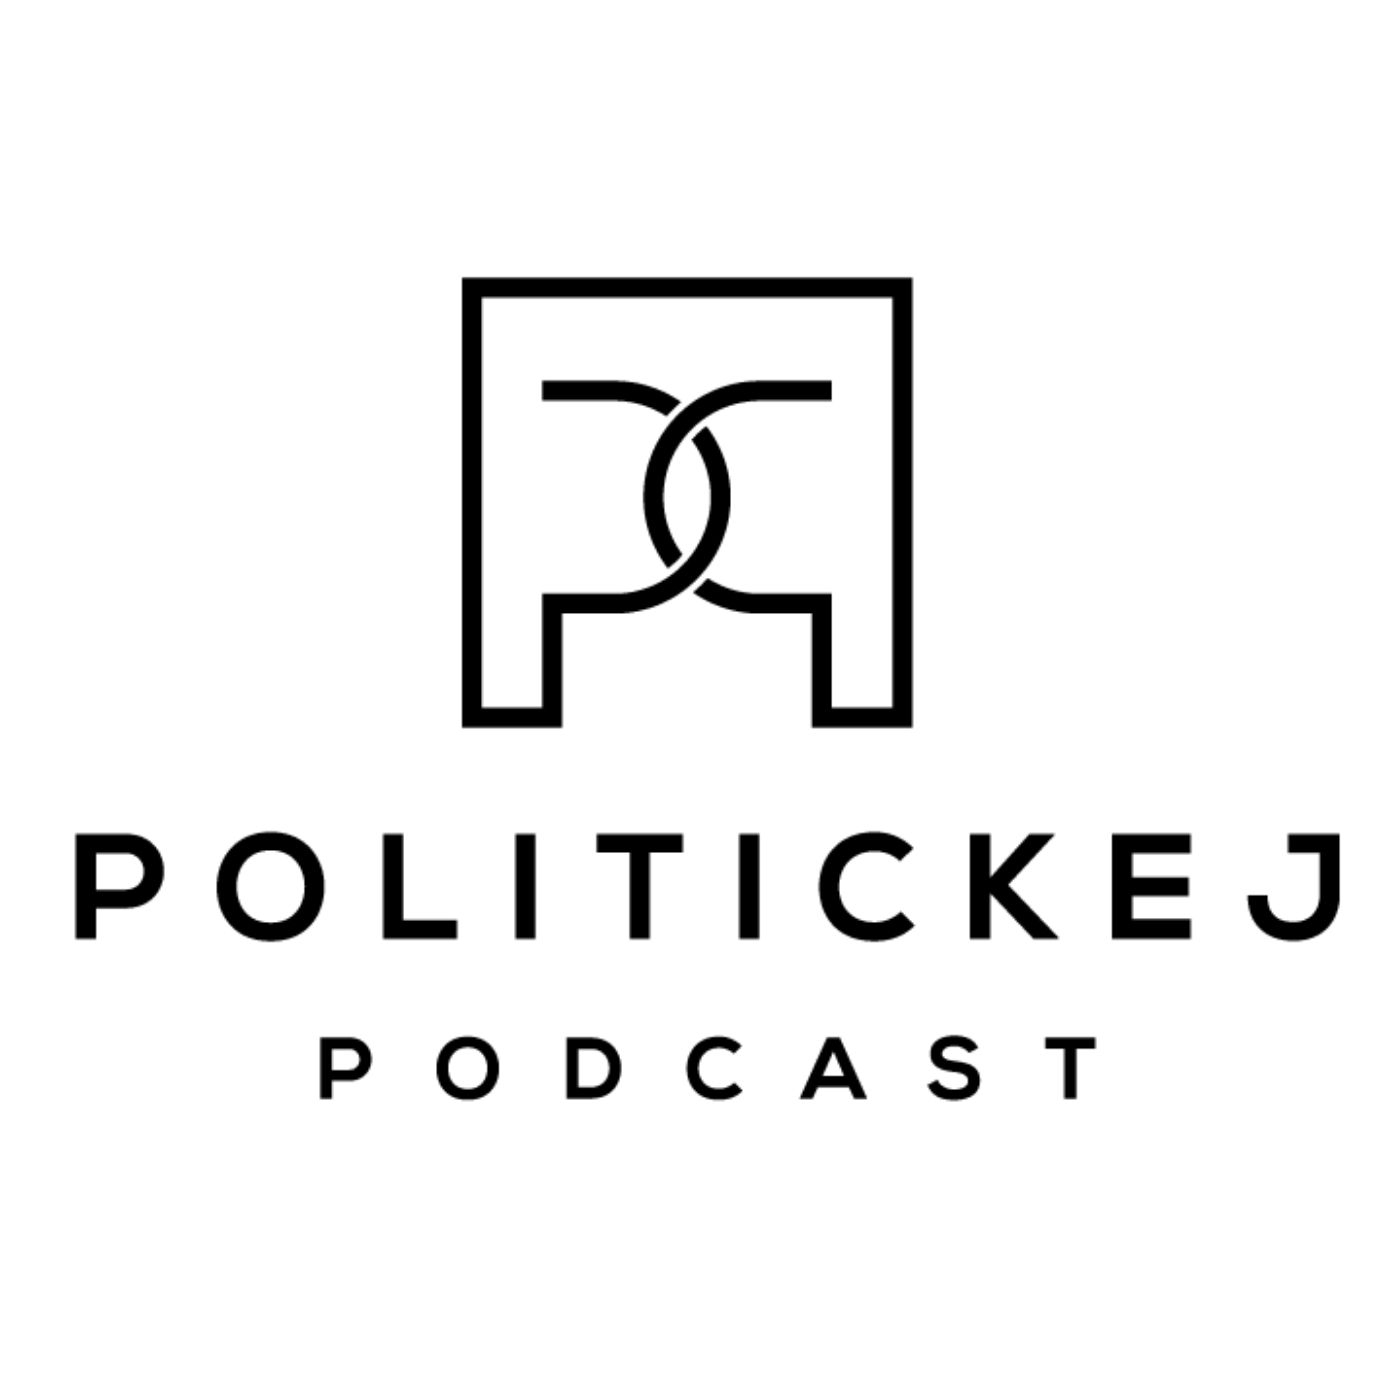 Politickej podcast